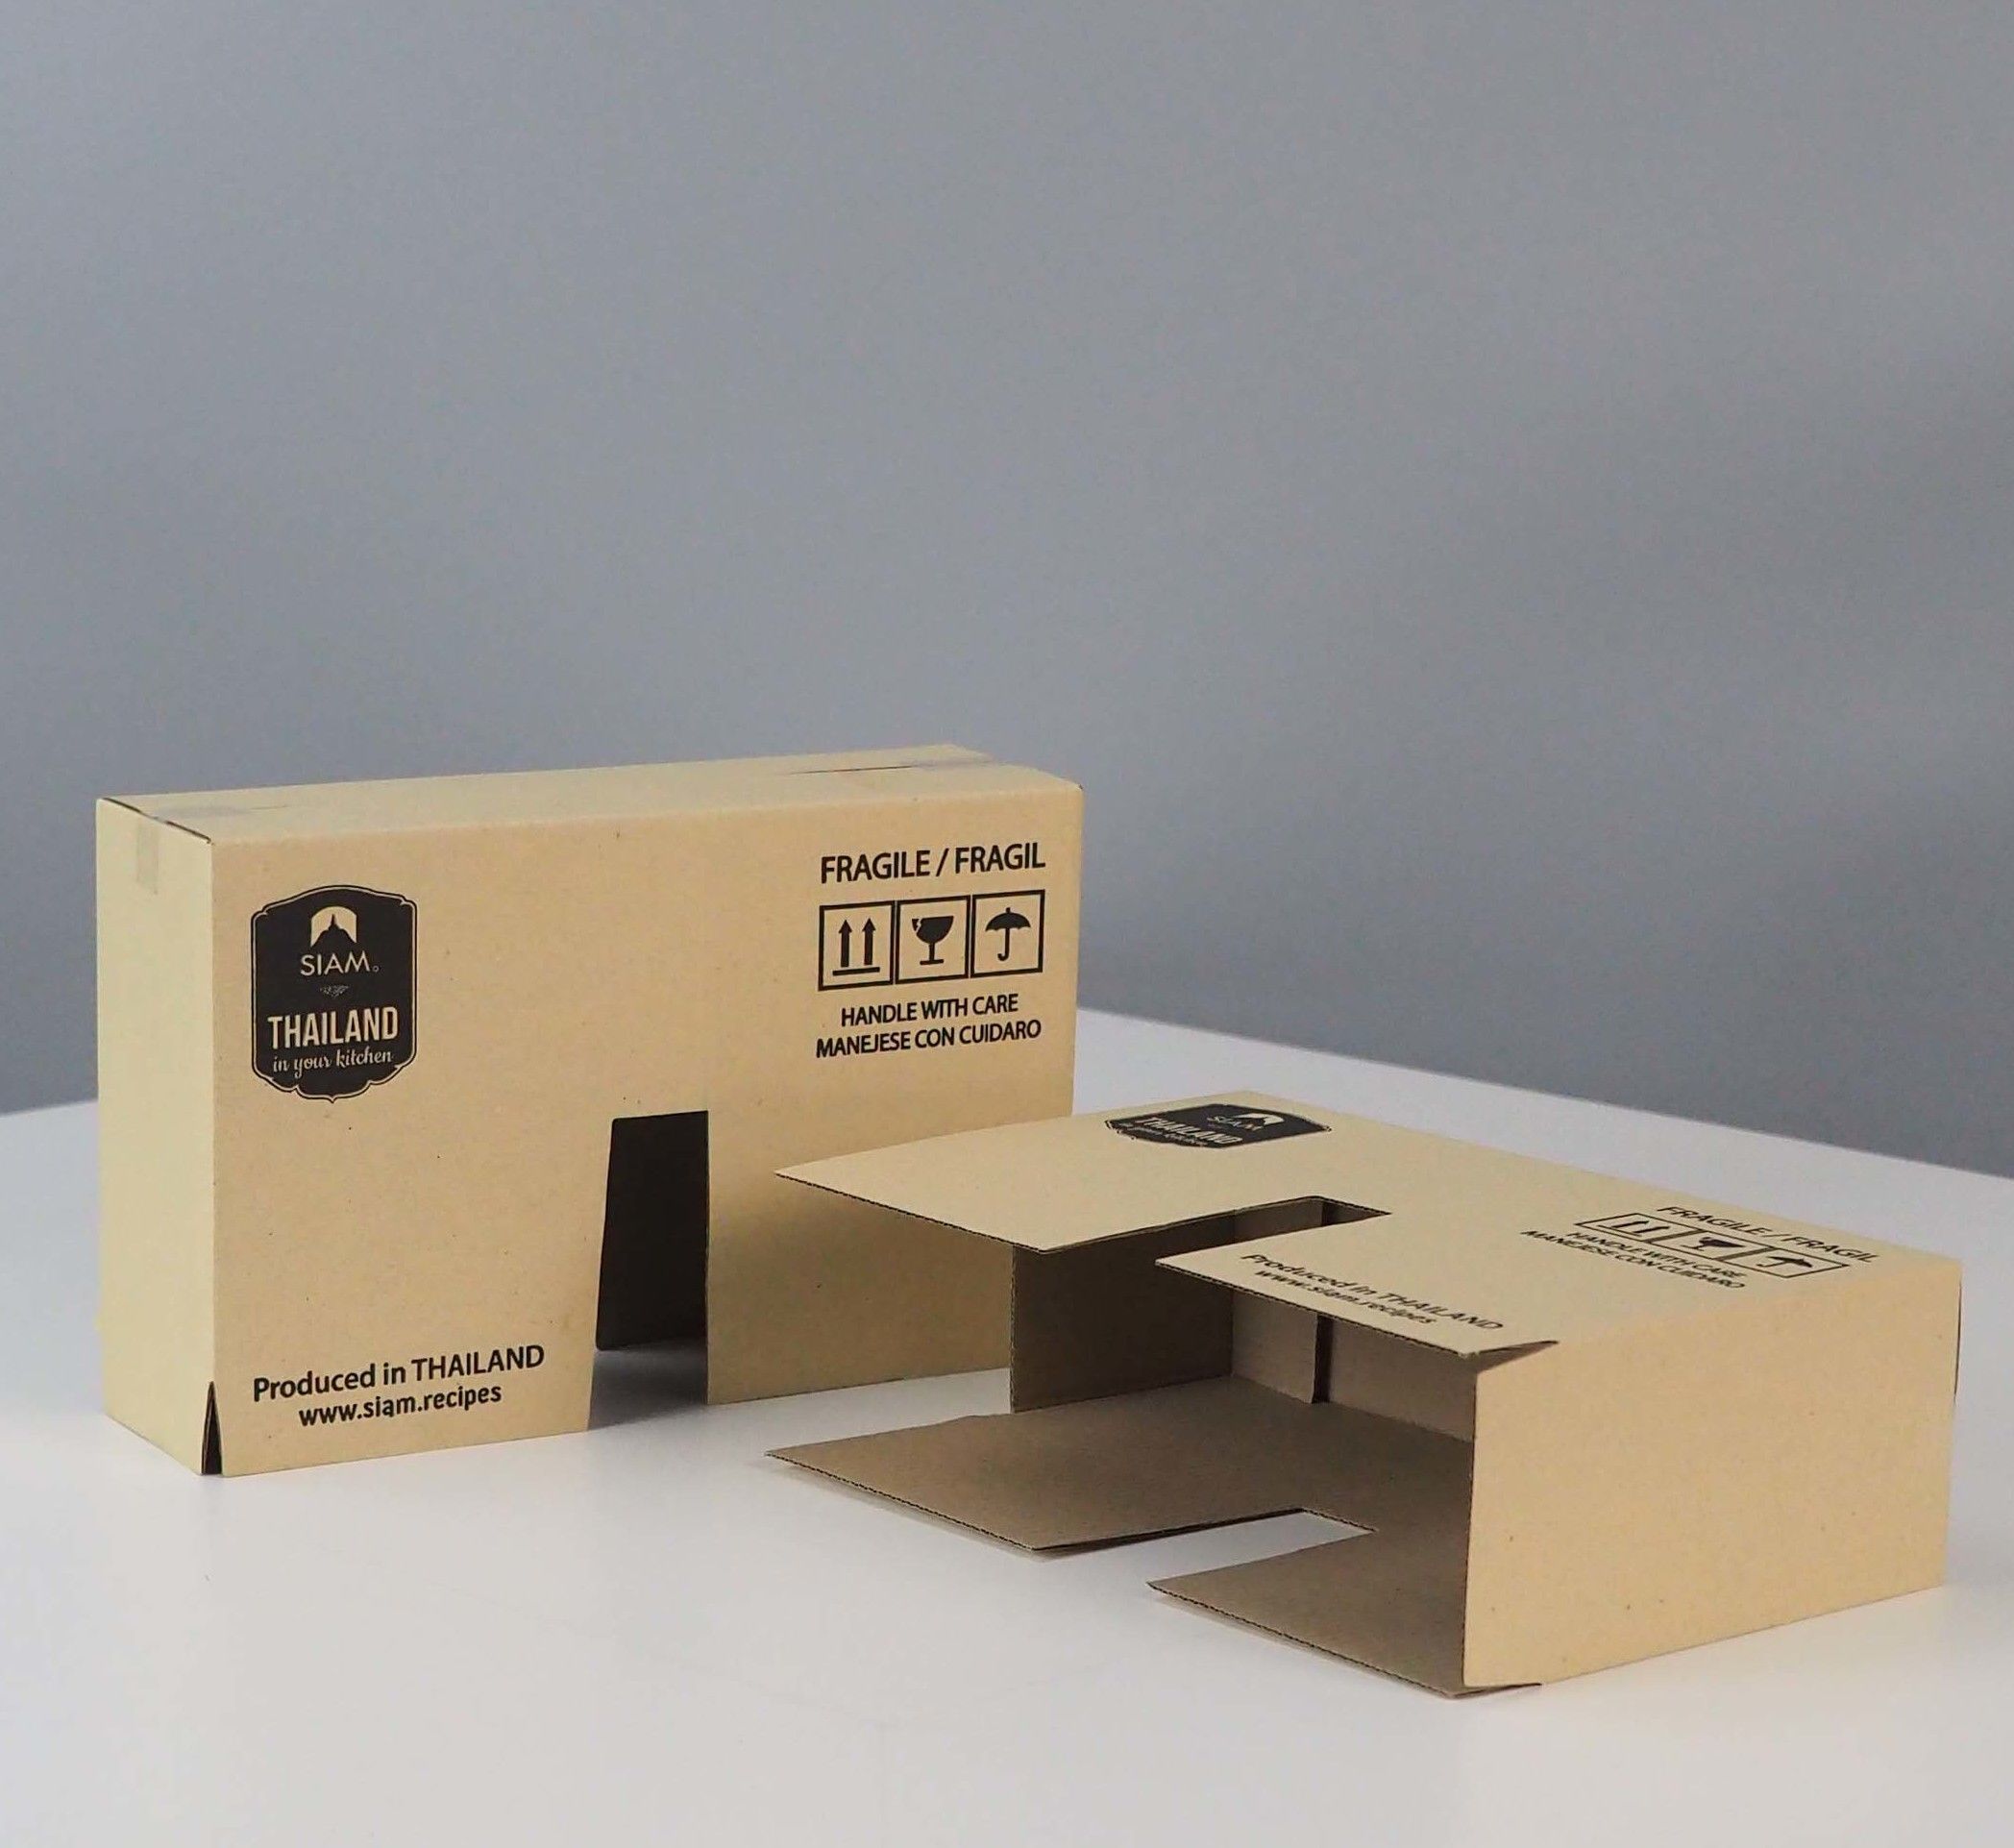 กล่องลูกฟูกทรงพิเศษ
กล่องครอบสินค้า
Brand SIAM